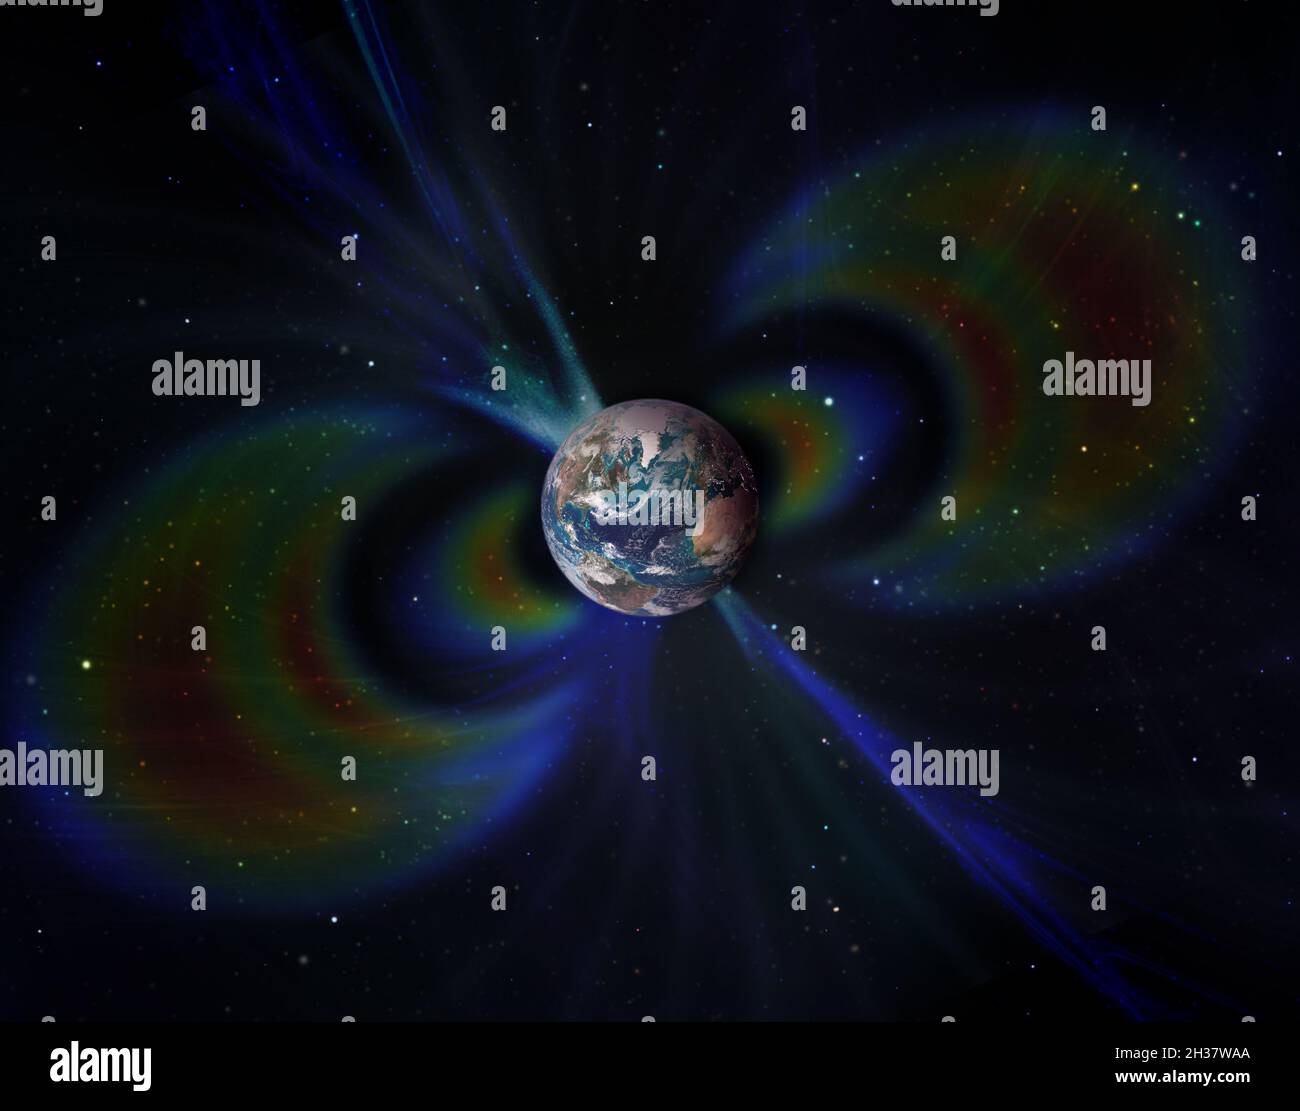 Campo geomagnético alrededor del planeta Tierra en el espacio. Elementos de esta imagen proporcionados por la NASA. Foto de stock